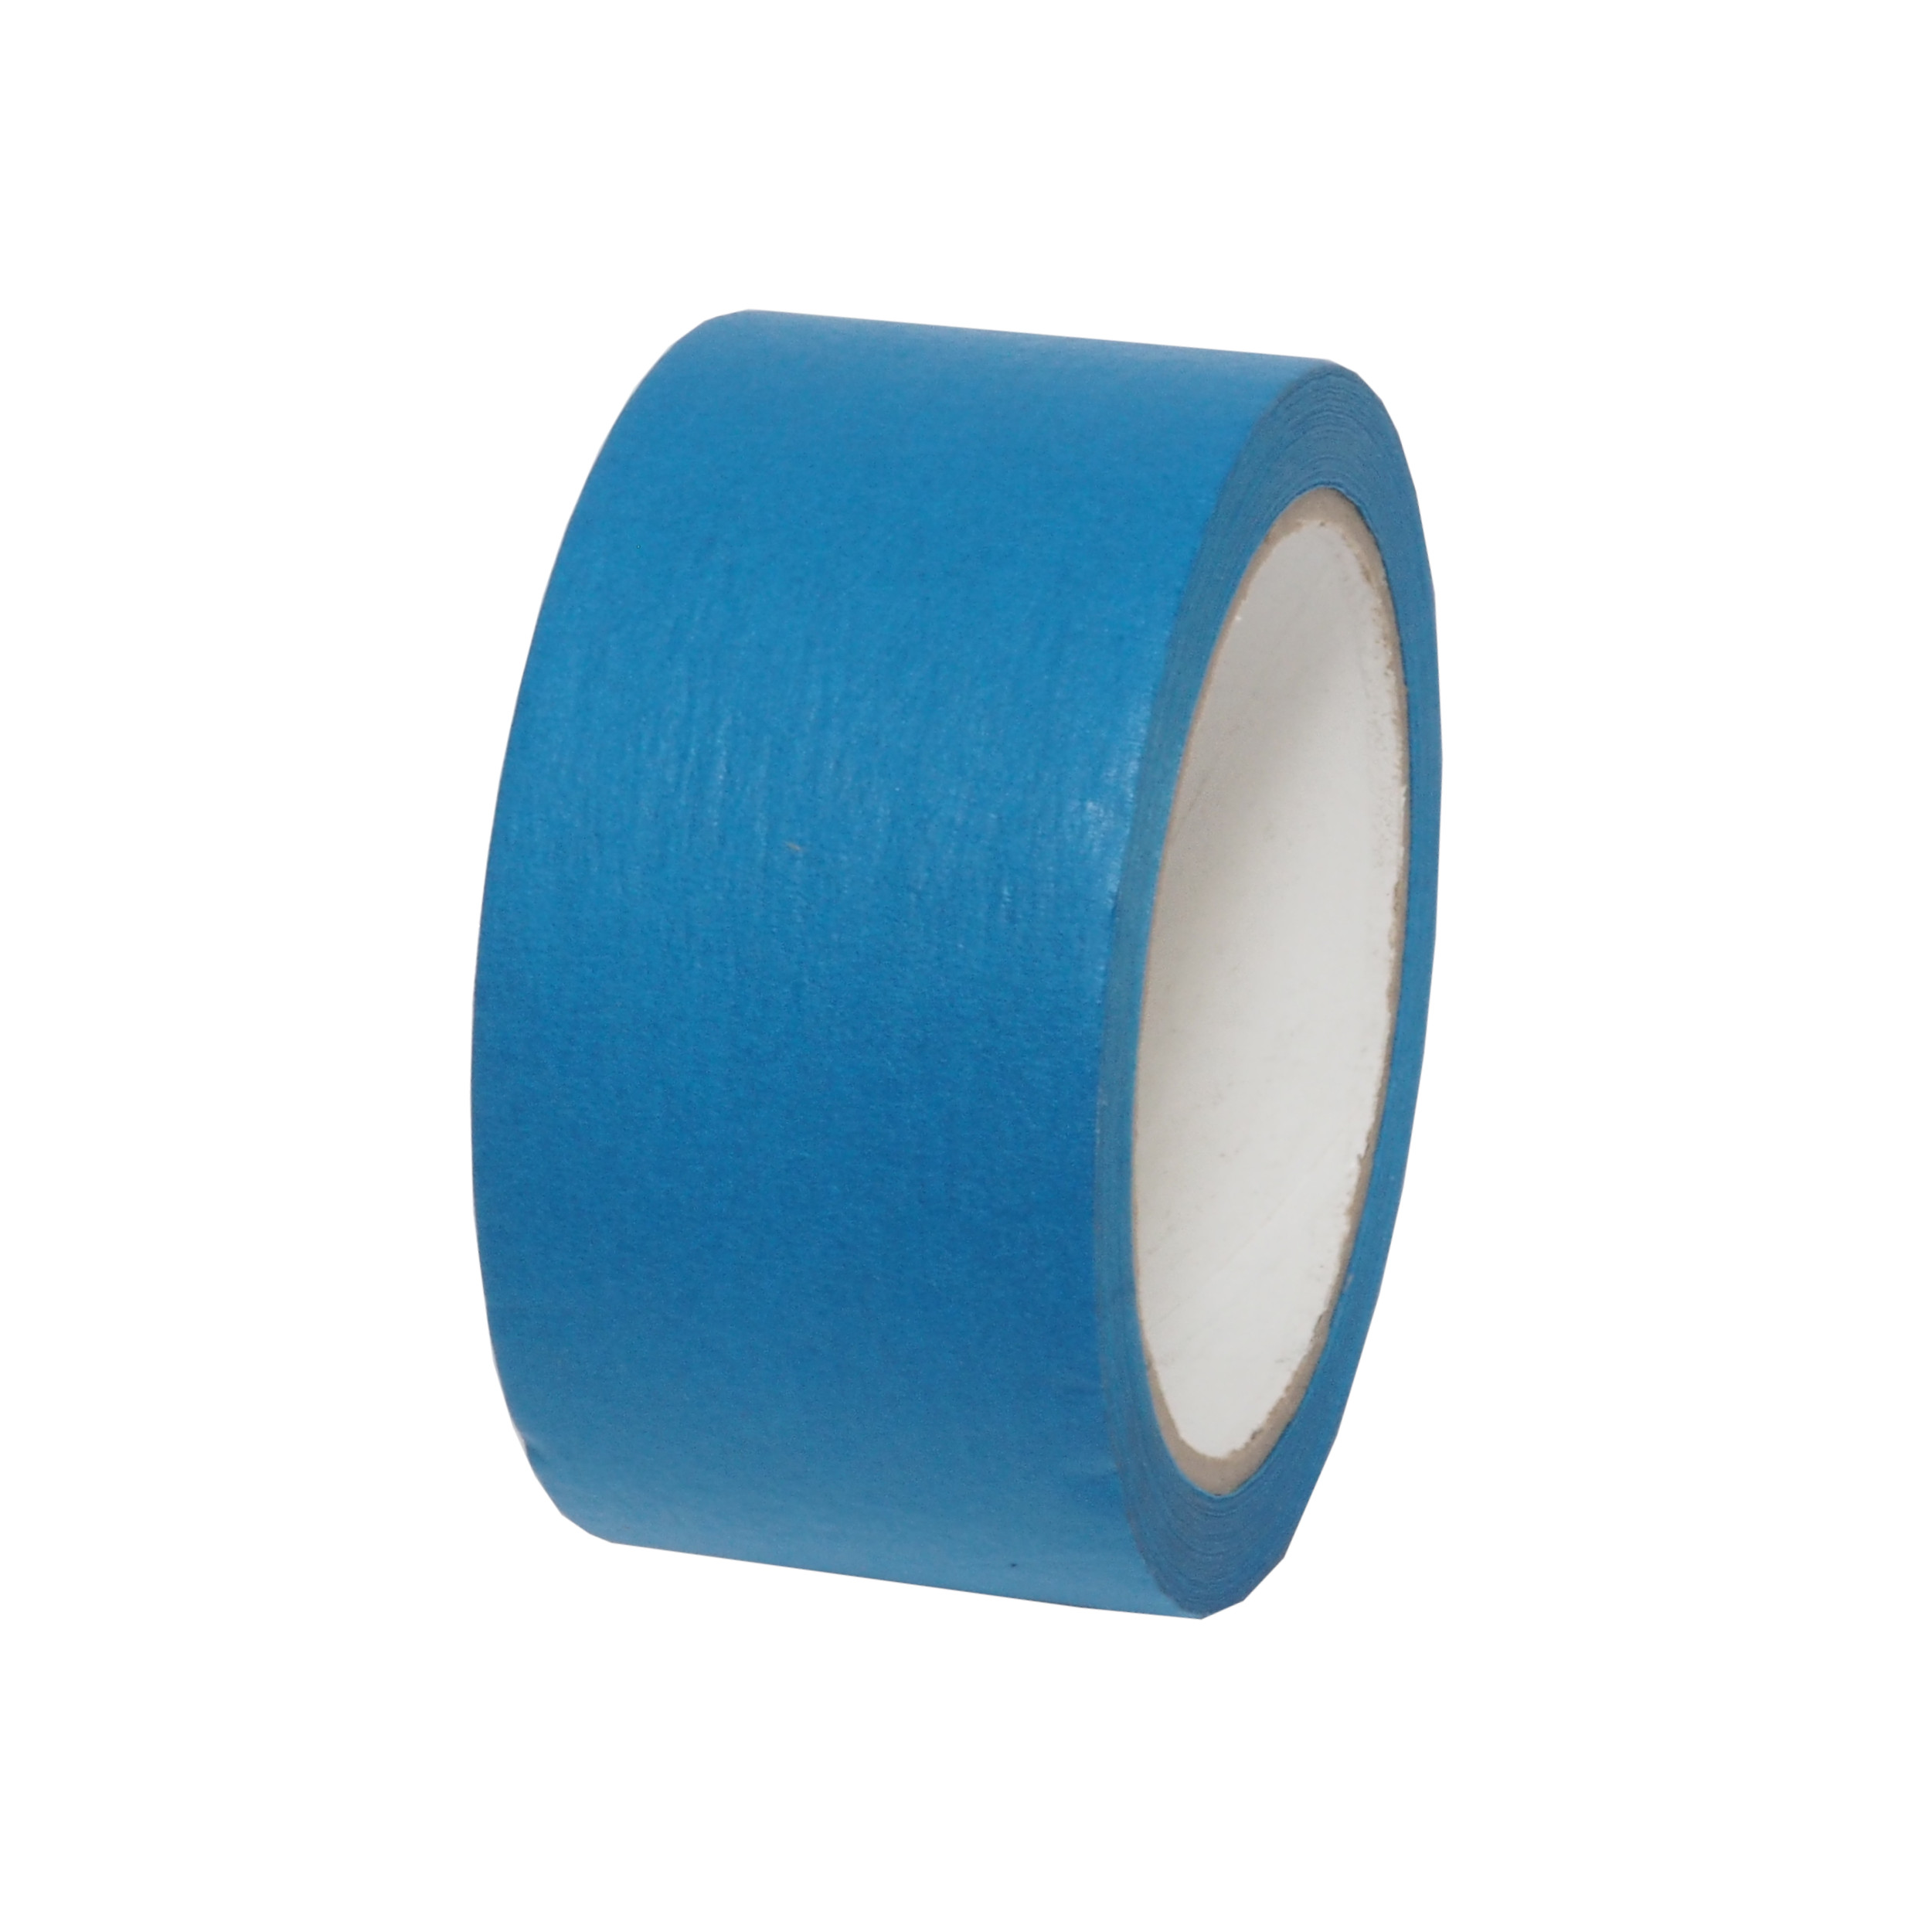 páska lepící, stavební, ochranná, modrá, 50 mm x 25 m 0.17 Kg TOP Sklad4 701434 12